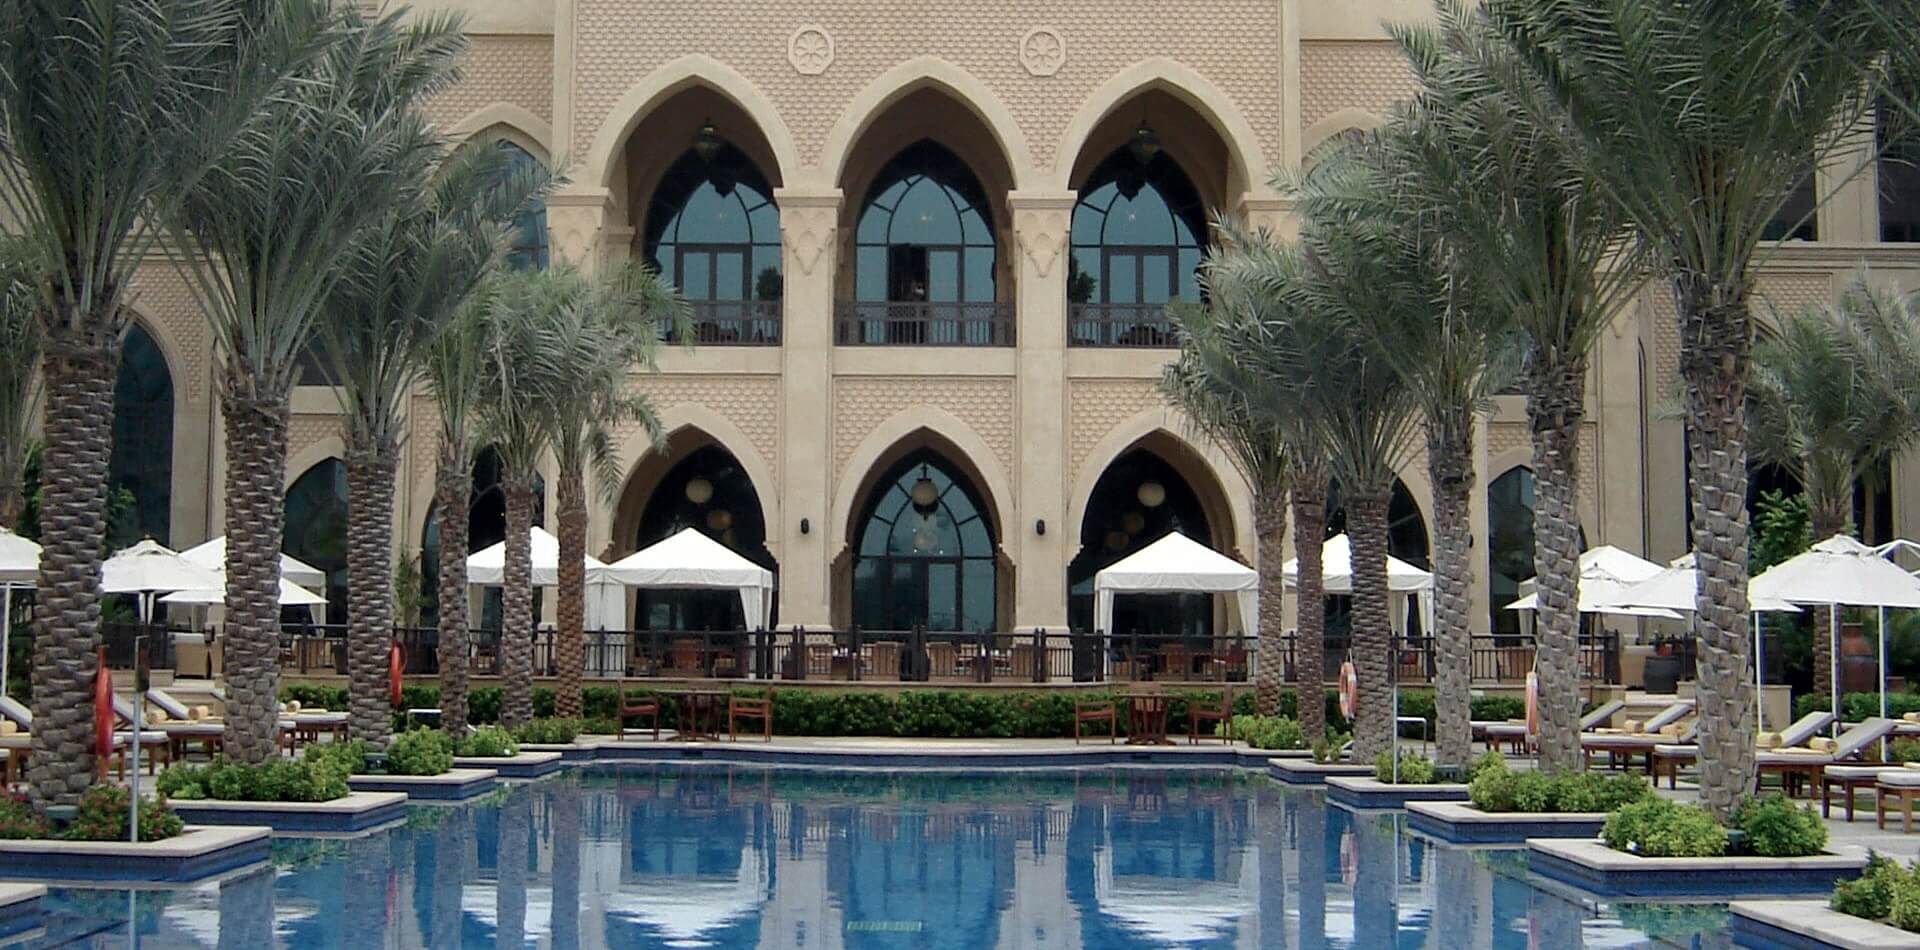 Лучшие предложения по раннему бронированию на курорты ОАЭ от Gold Travel